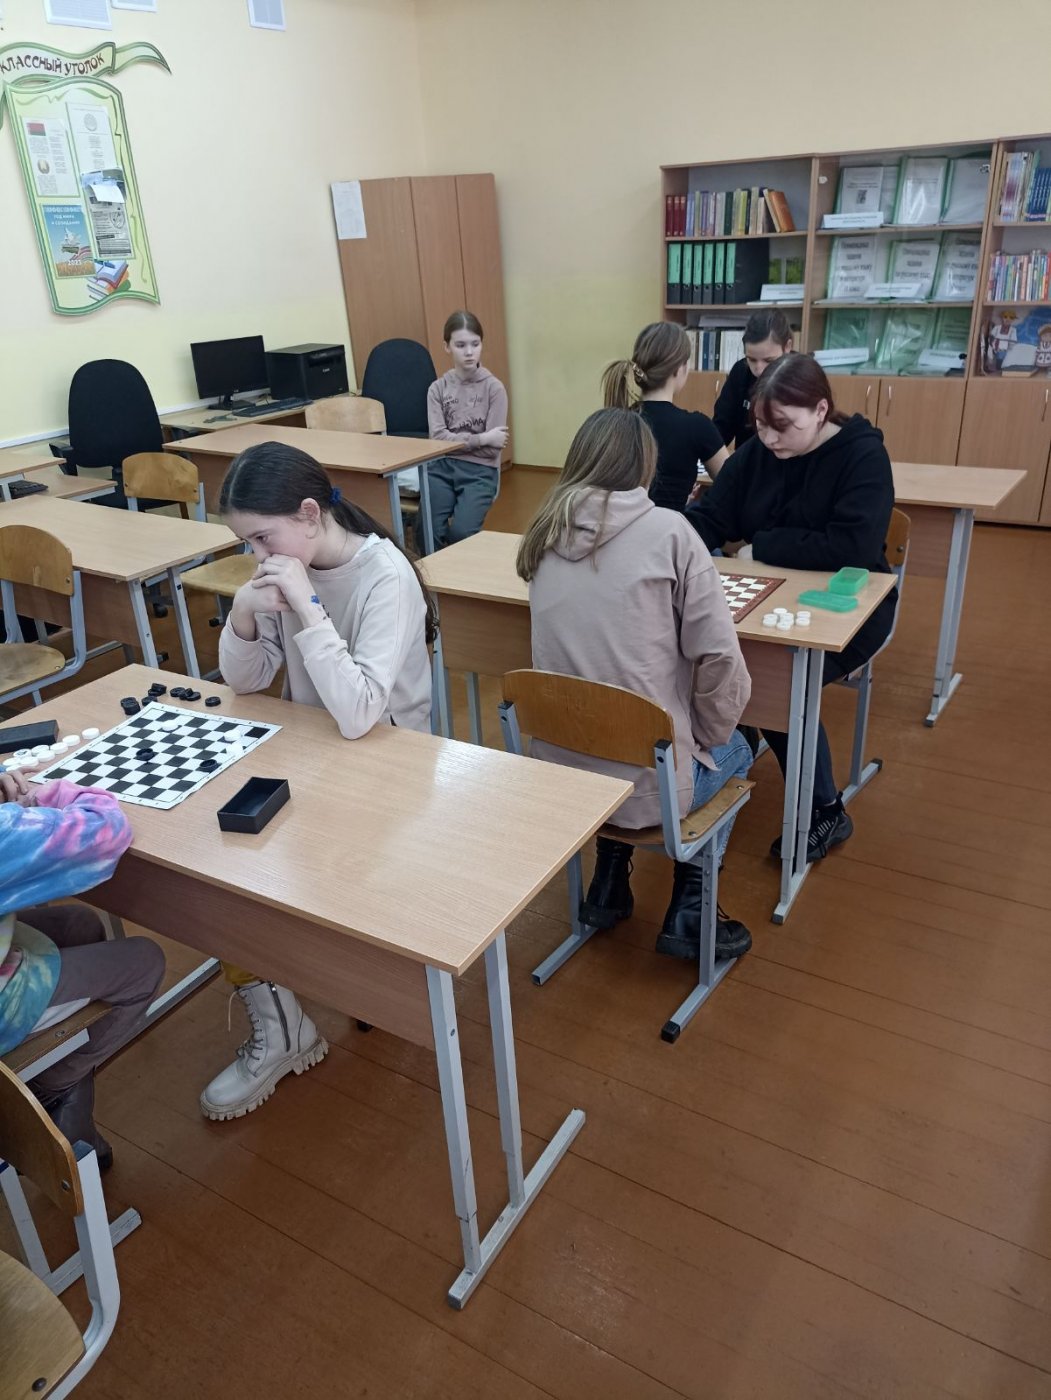 Первое место заняла сборная команда учащихся гимназии  по шашкам среди девяти команда на районных соревнованиях